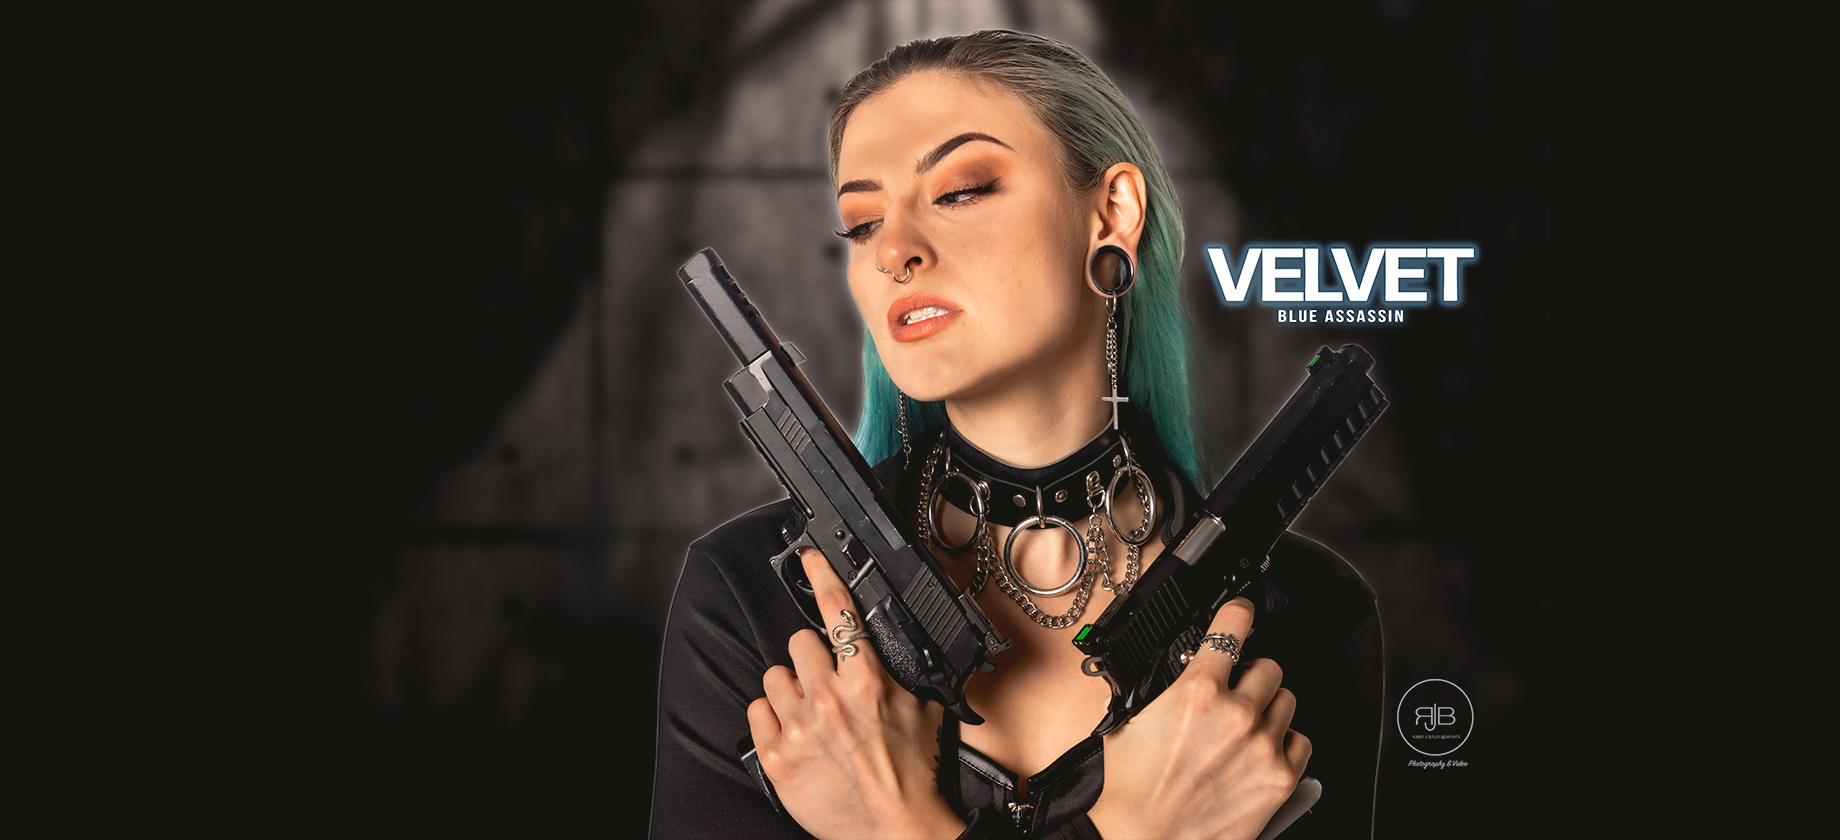 Velvet: Blue Assassin